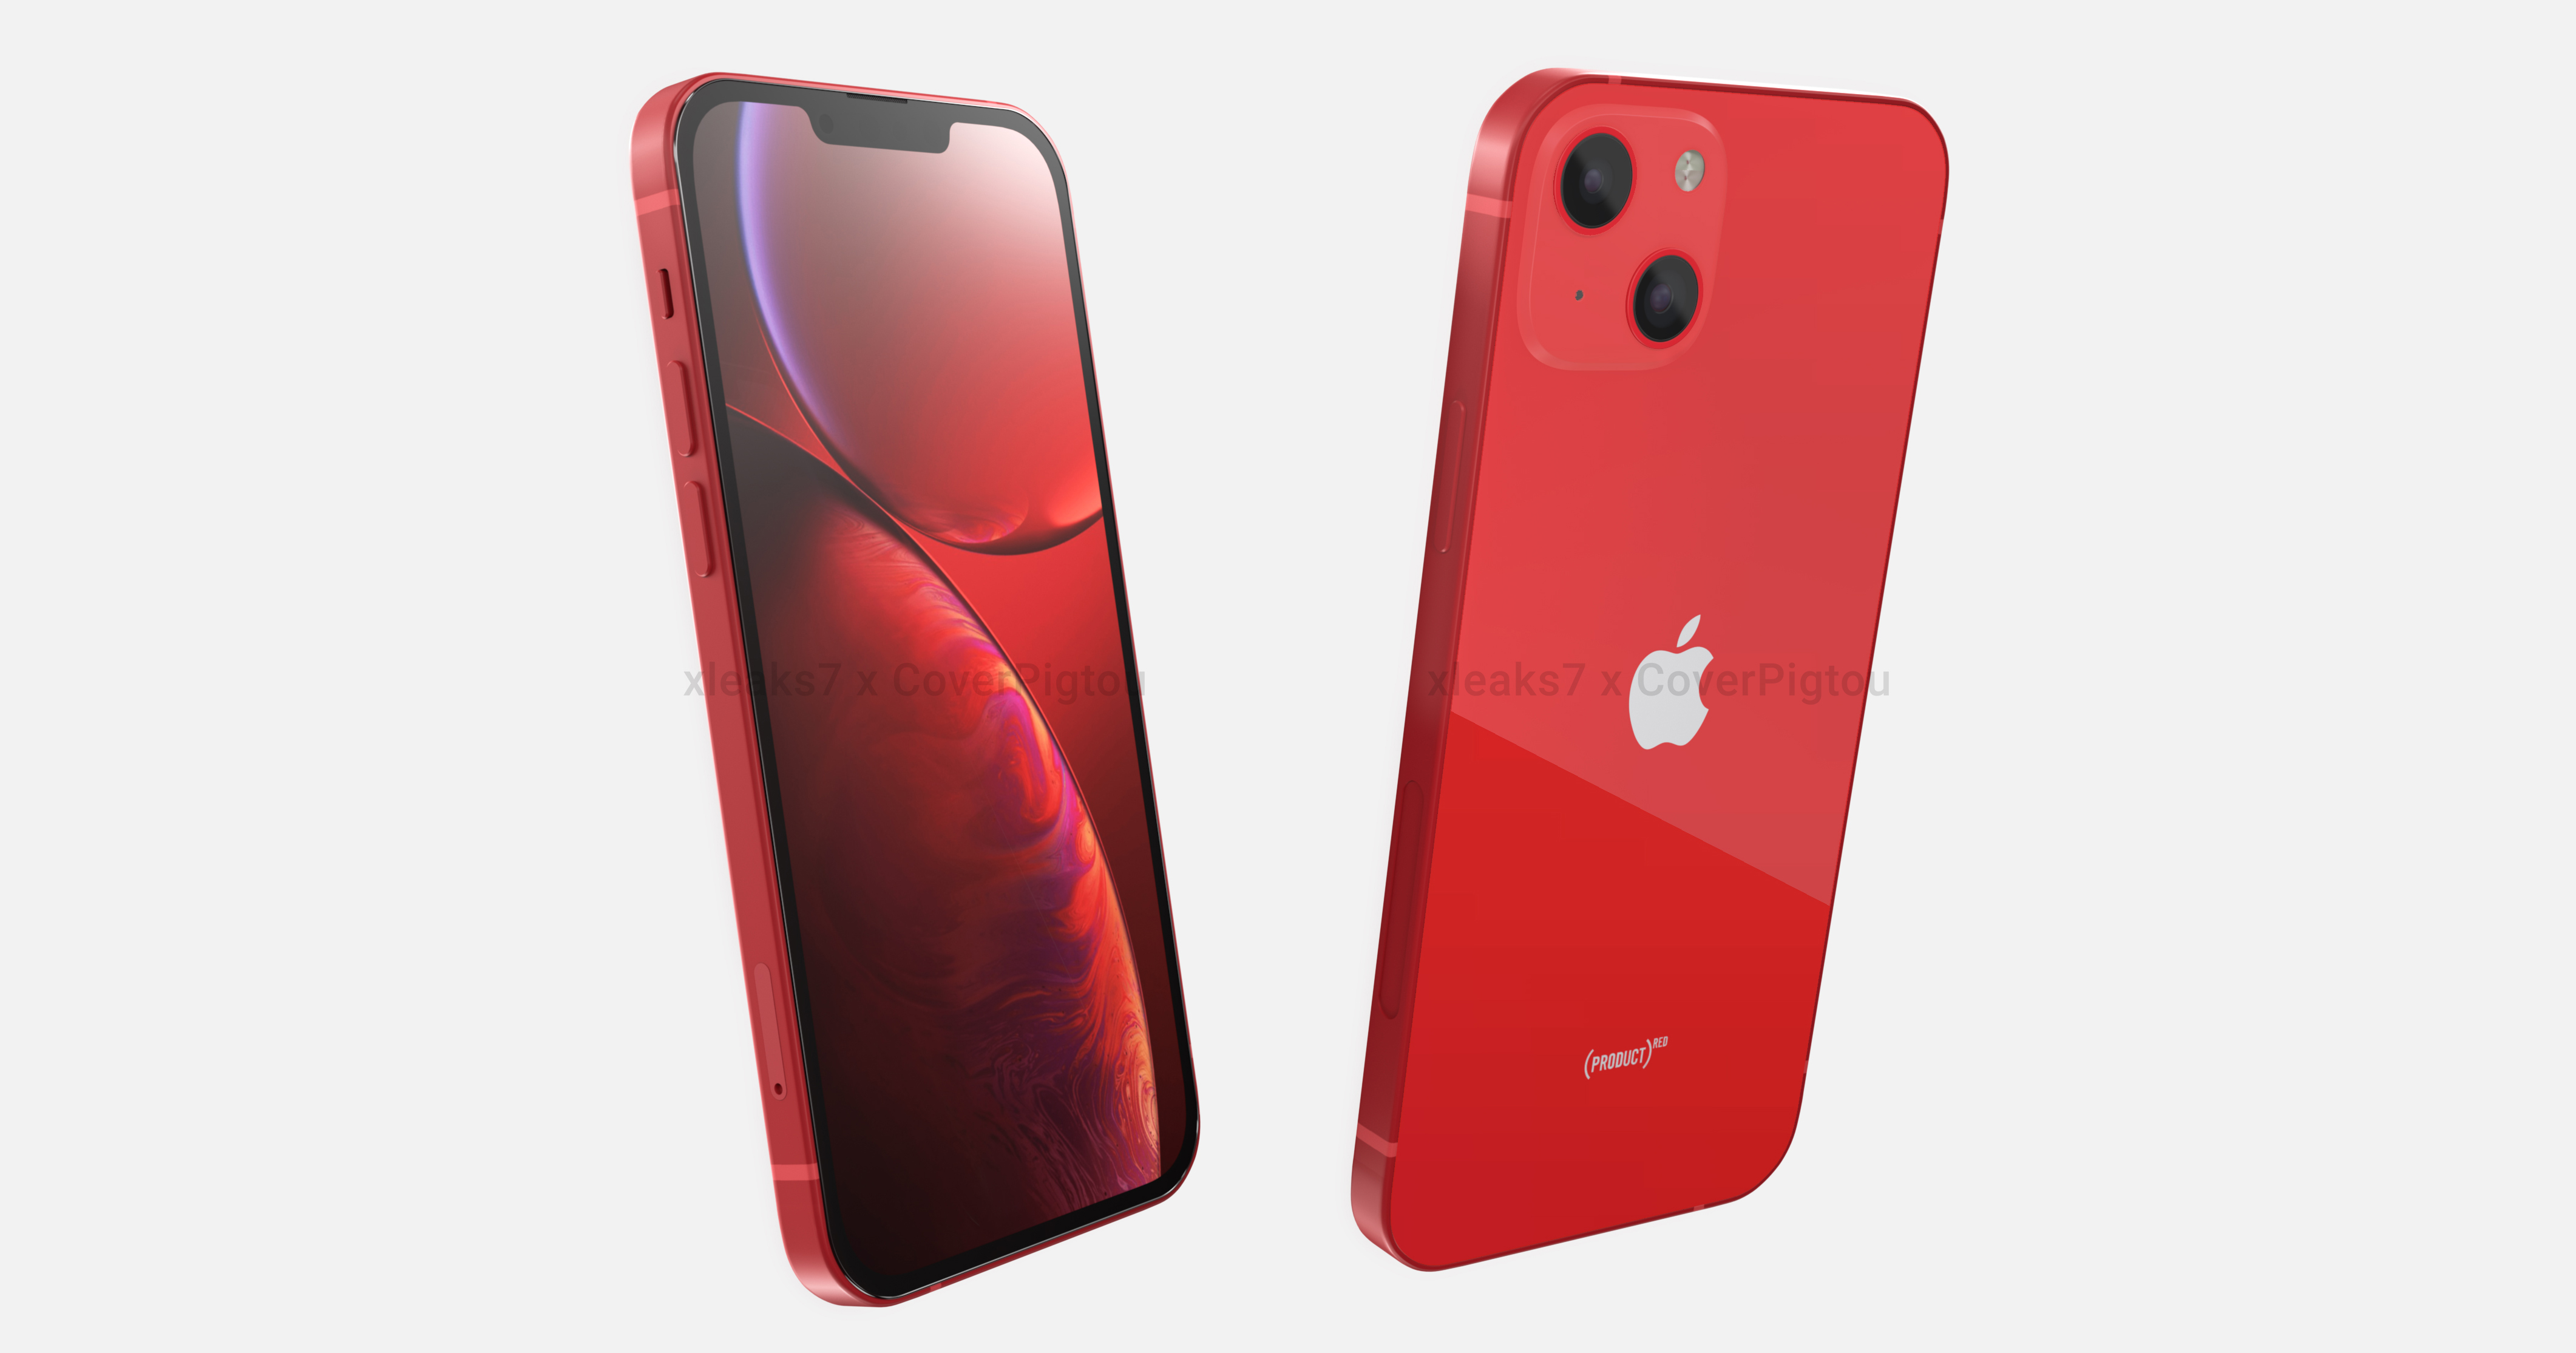 iPhone 13 đỏ: Hãy cùng khám phá chiếc iPhone 13 đỏ đầy sự cuốn hút và nổi bật. Thiết kế đột phá, camera chất lượng cao và hiệu năng mạnh mẽ sẽ khiến bạn không thể rời mắt khỏi sản phẩm này.